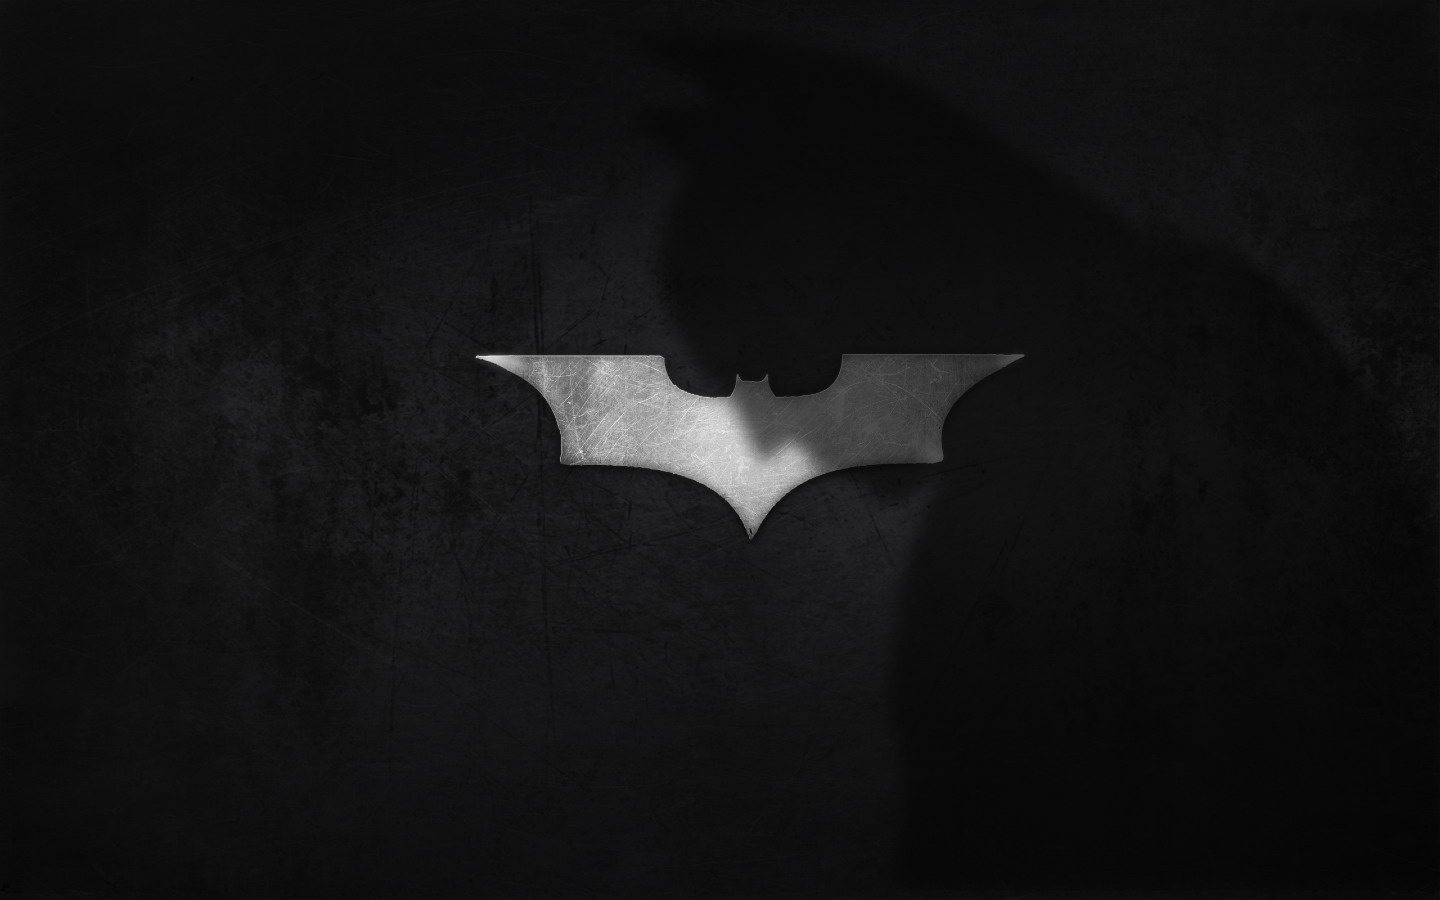 壁纸1440x900蝙蝠侠 宽屏 桌酷精选一图 壁纸7壁纸 蝙蝠侠（宽屏）精壁纸 蝙蝠侠（宽屏）精图片 蝙蝠侠（宽屏）精素材 精选壁纸 精选图库 精选图片素材桌面壁纸